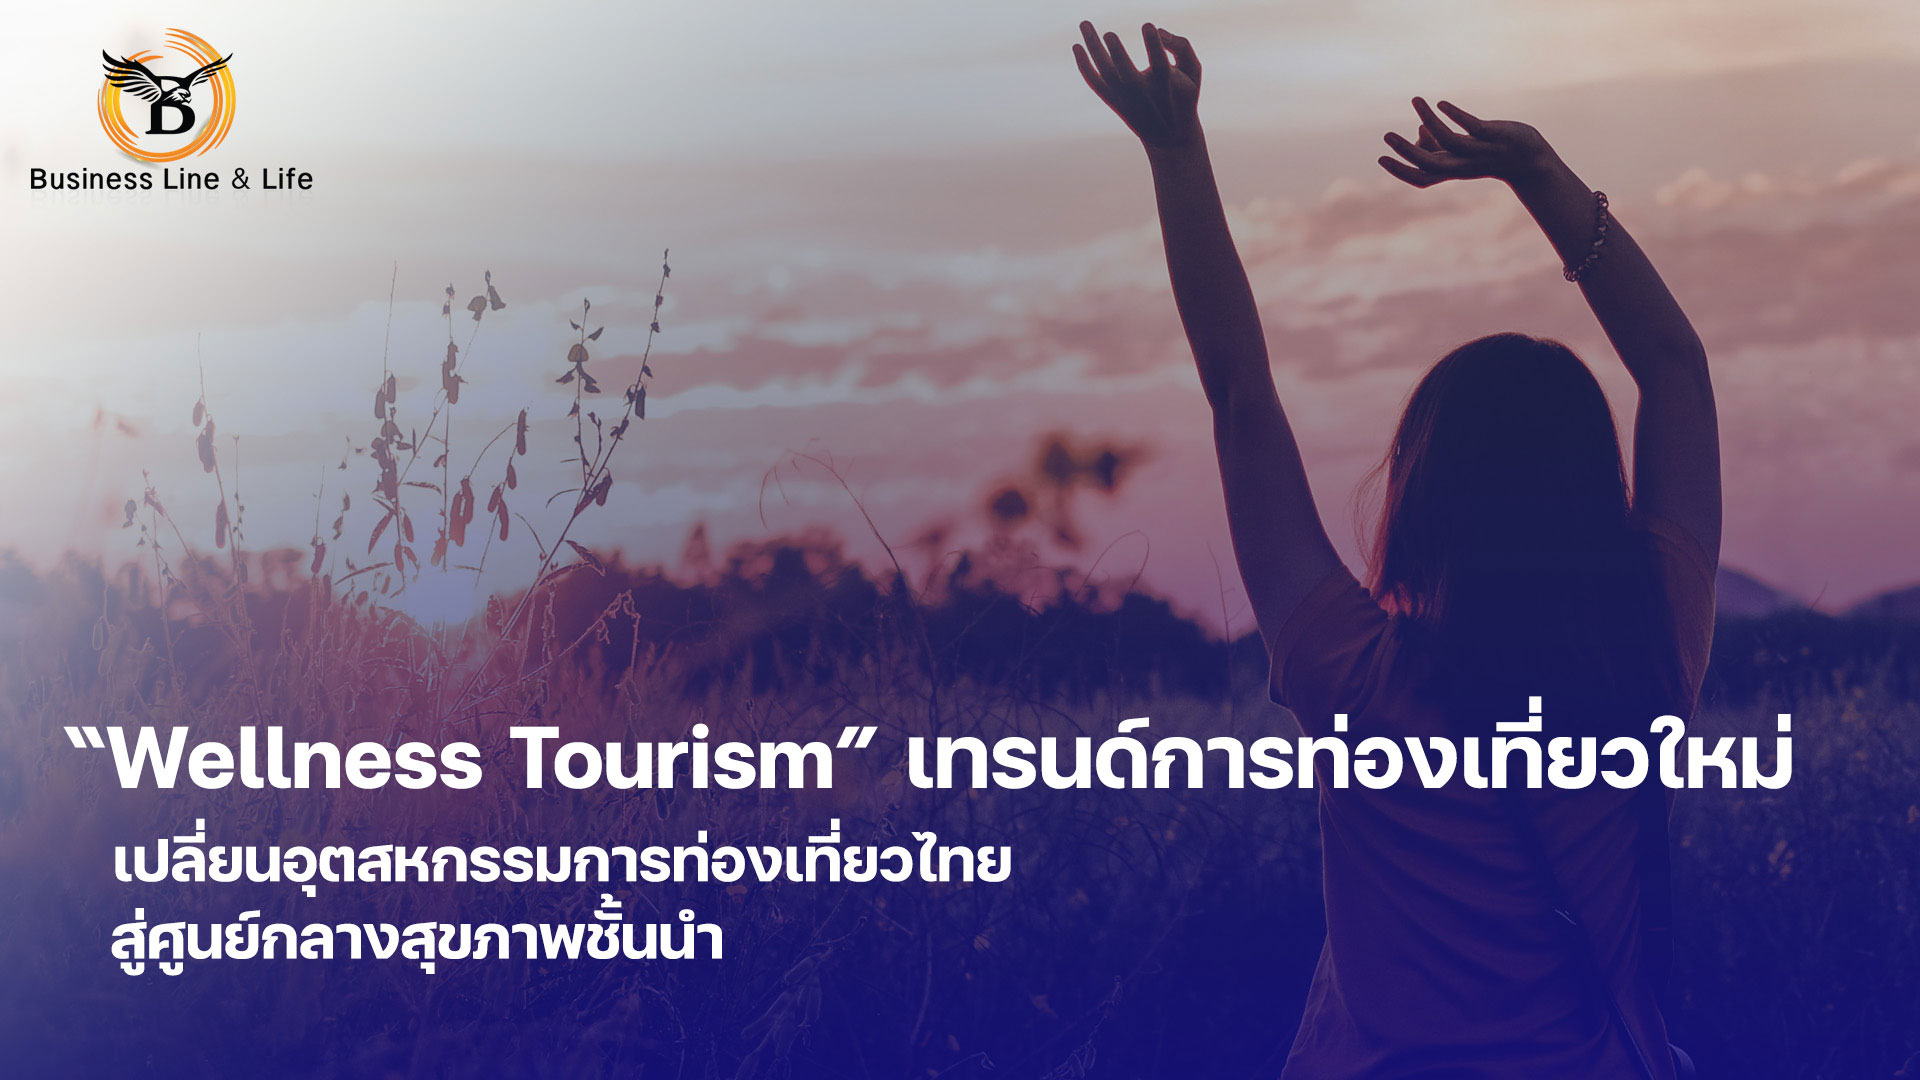 Wellness Tourism เทรนด์การท่องเที่ยวใหม่ เปลี่ยนอุตสหกรรมการท่องเที่ยวไทยสู่ศูนย์กลางสุขภาพชั้นนำ